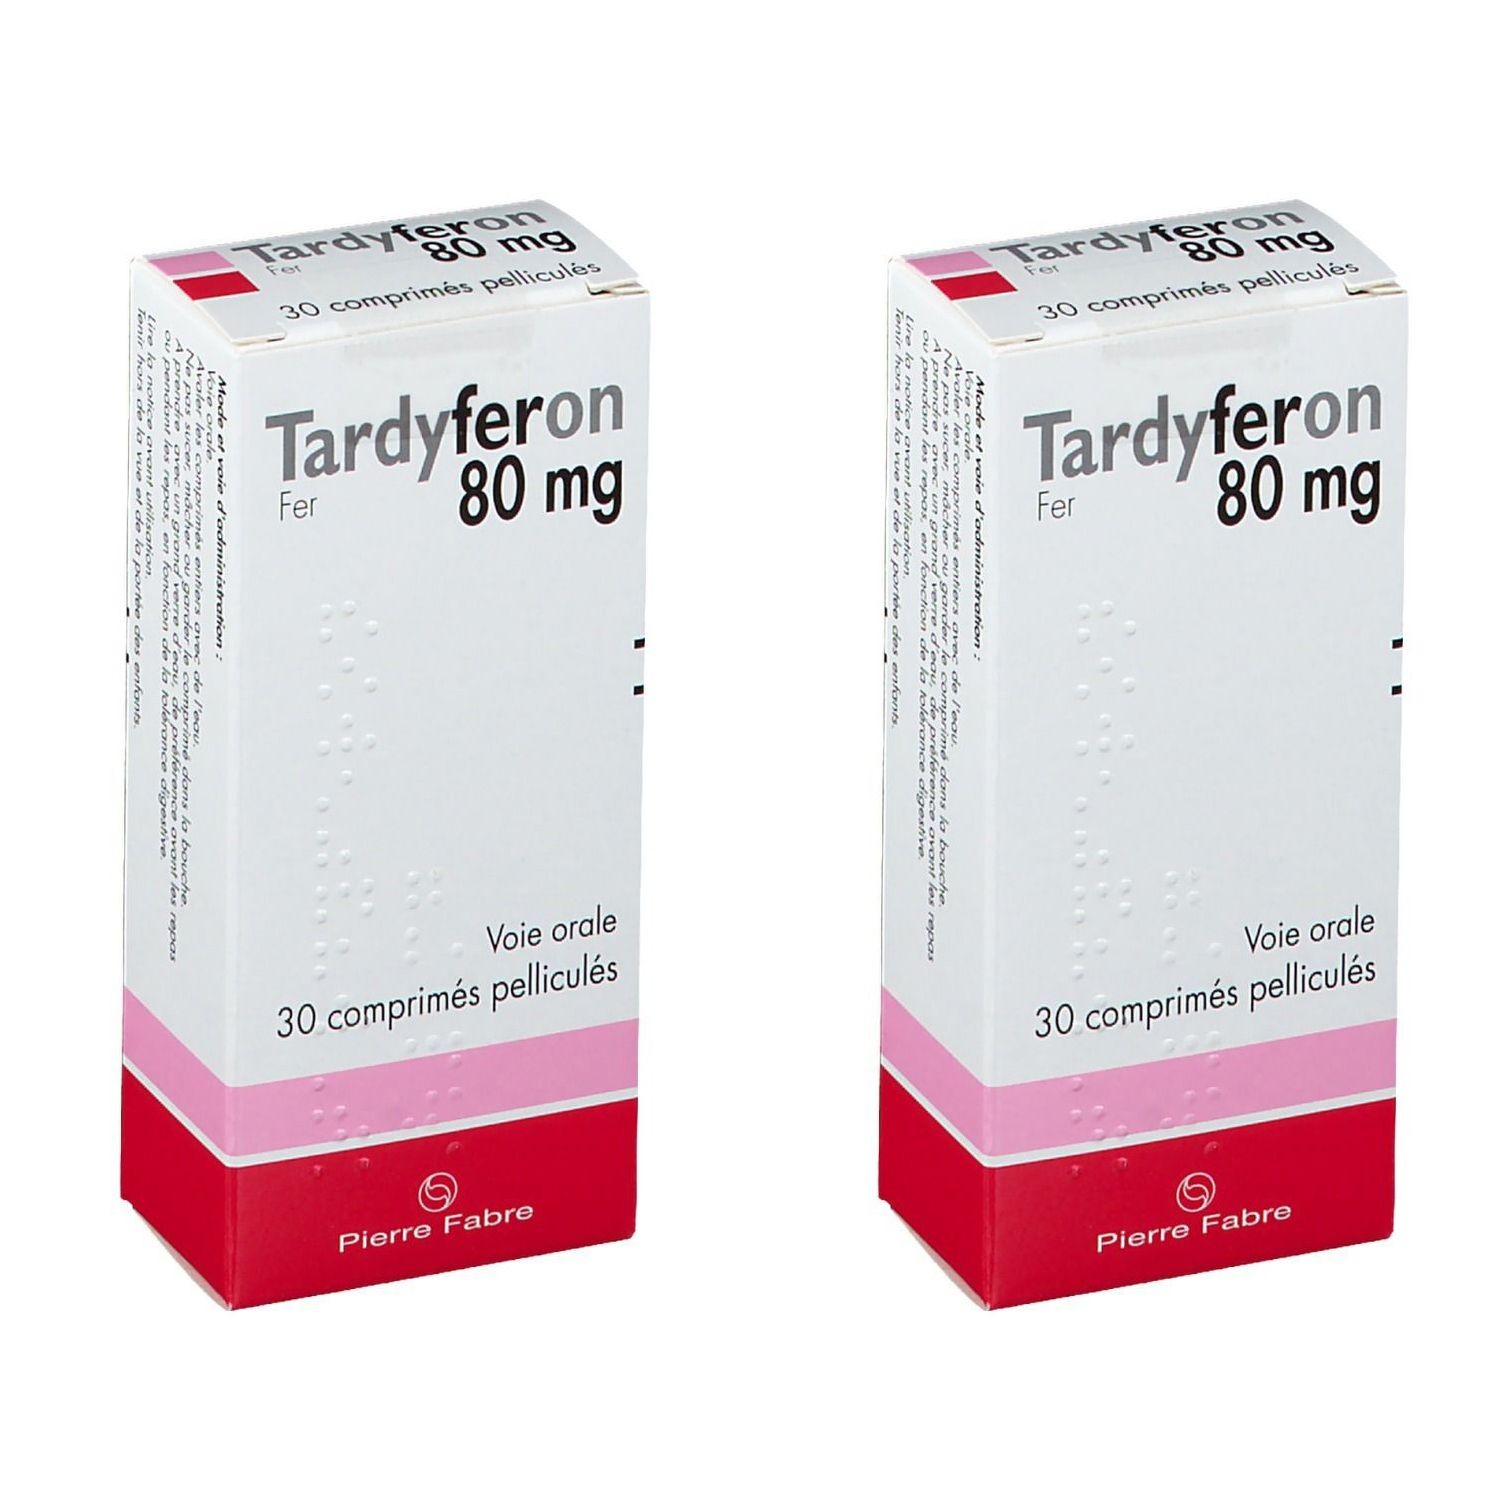 Pierre Fabre Tardyferon 80 mg